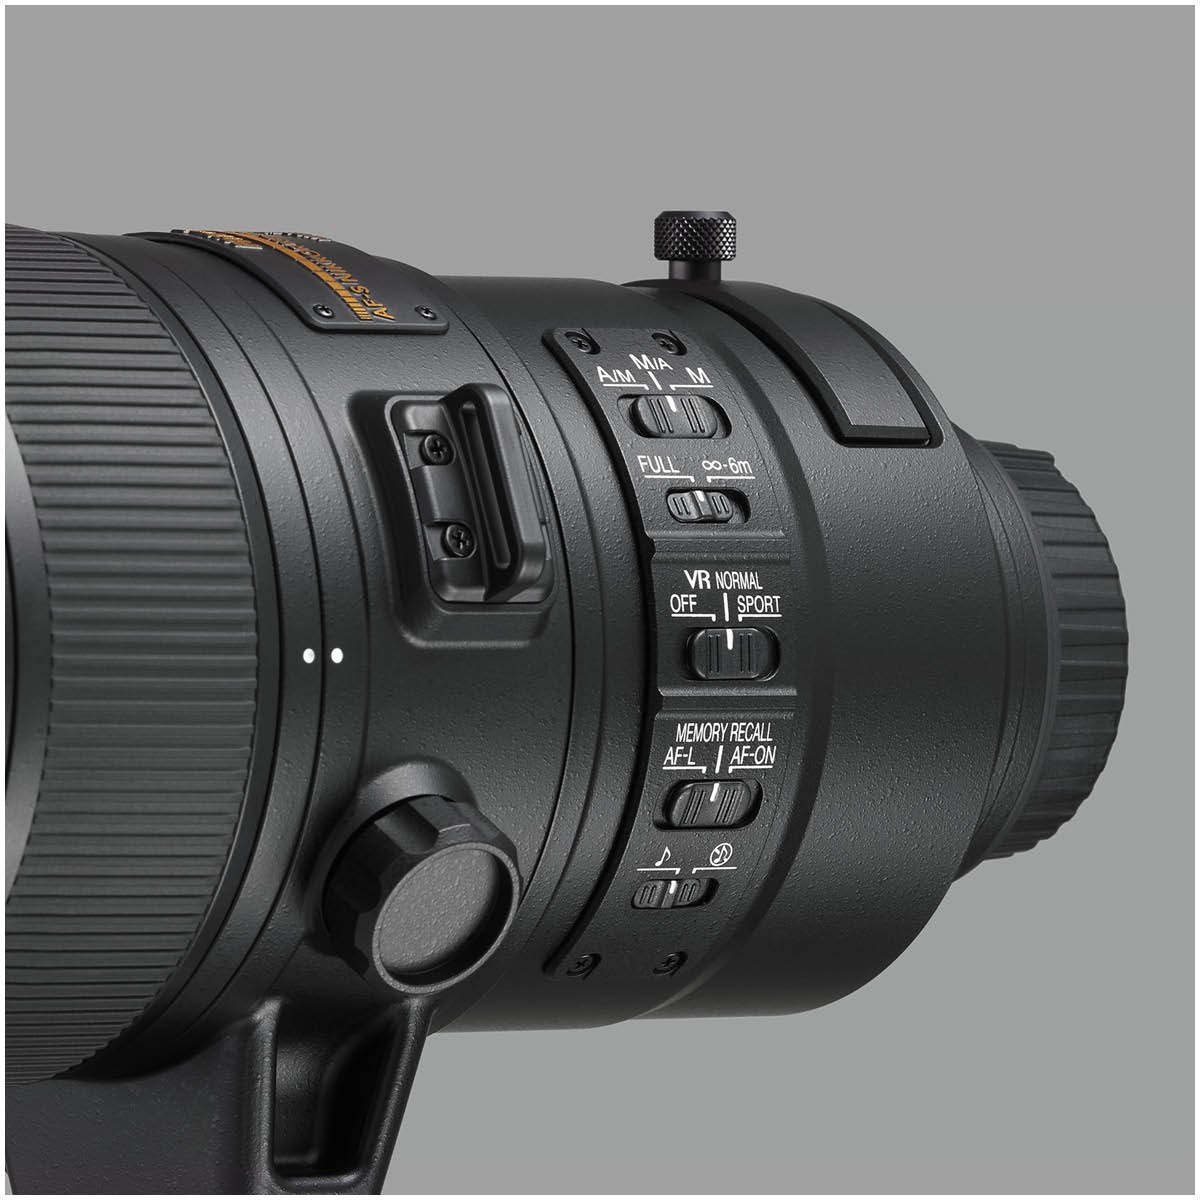 Nikon 180-400 mm 1:4,0 AF-S mit TC-1,4 E FL ED VR 